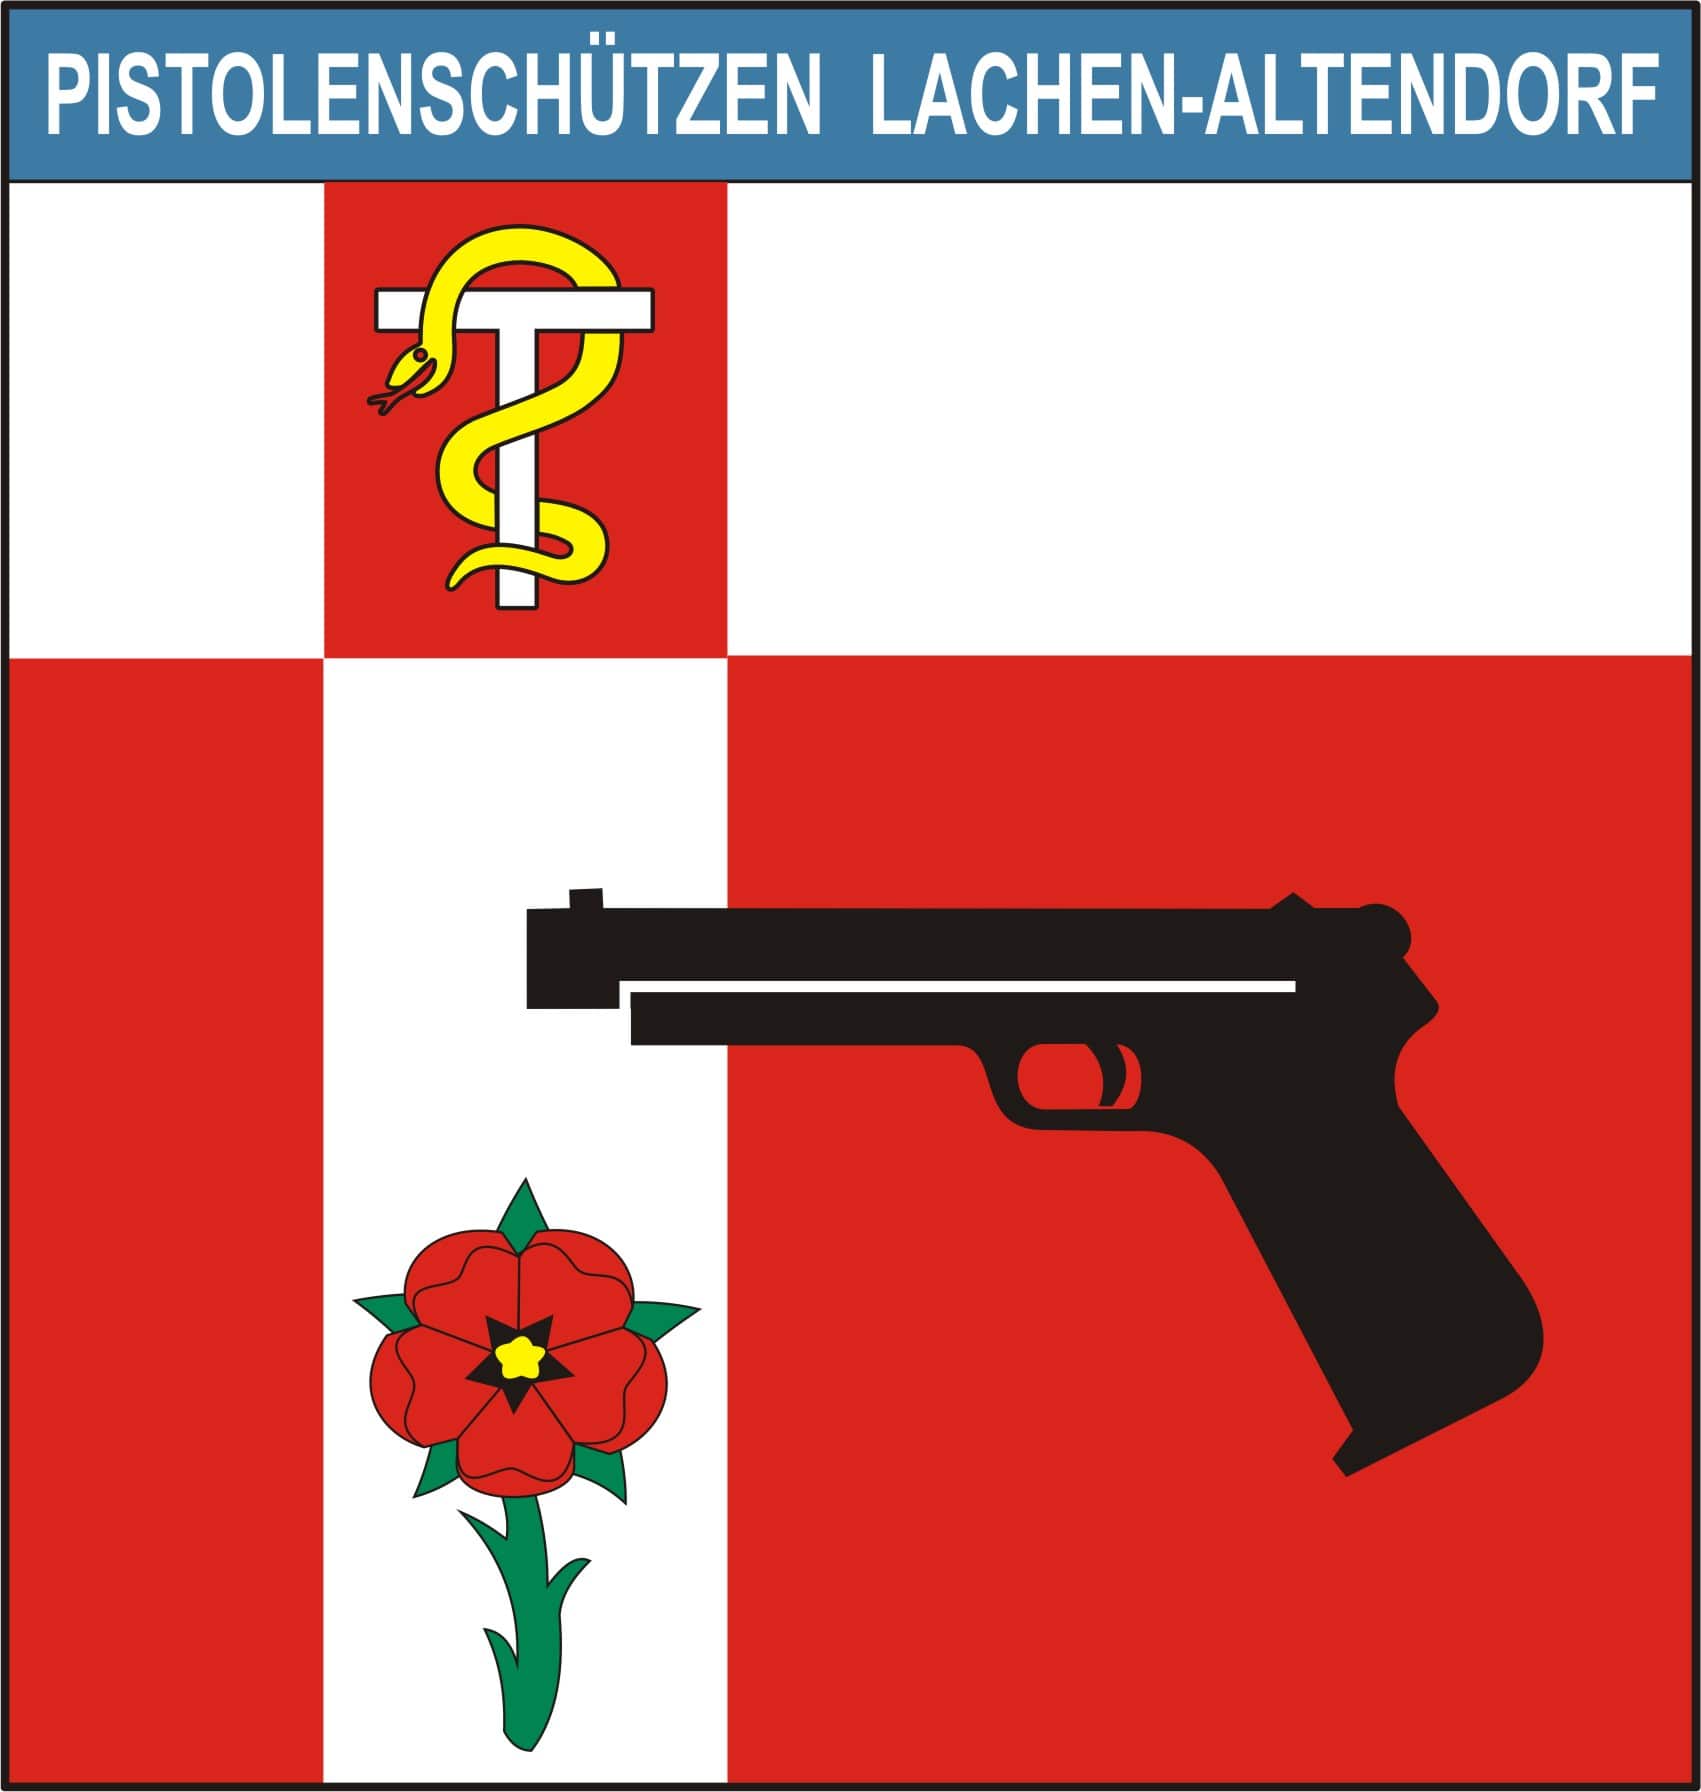 Pistolenschützen Lachen-Altendorf